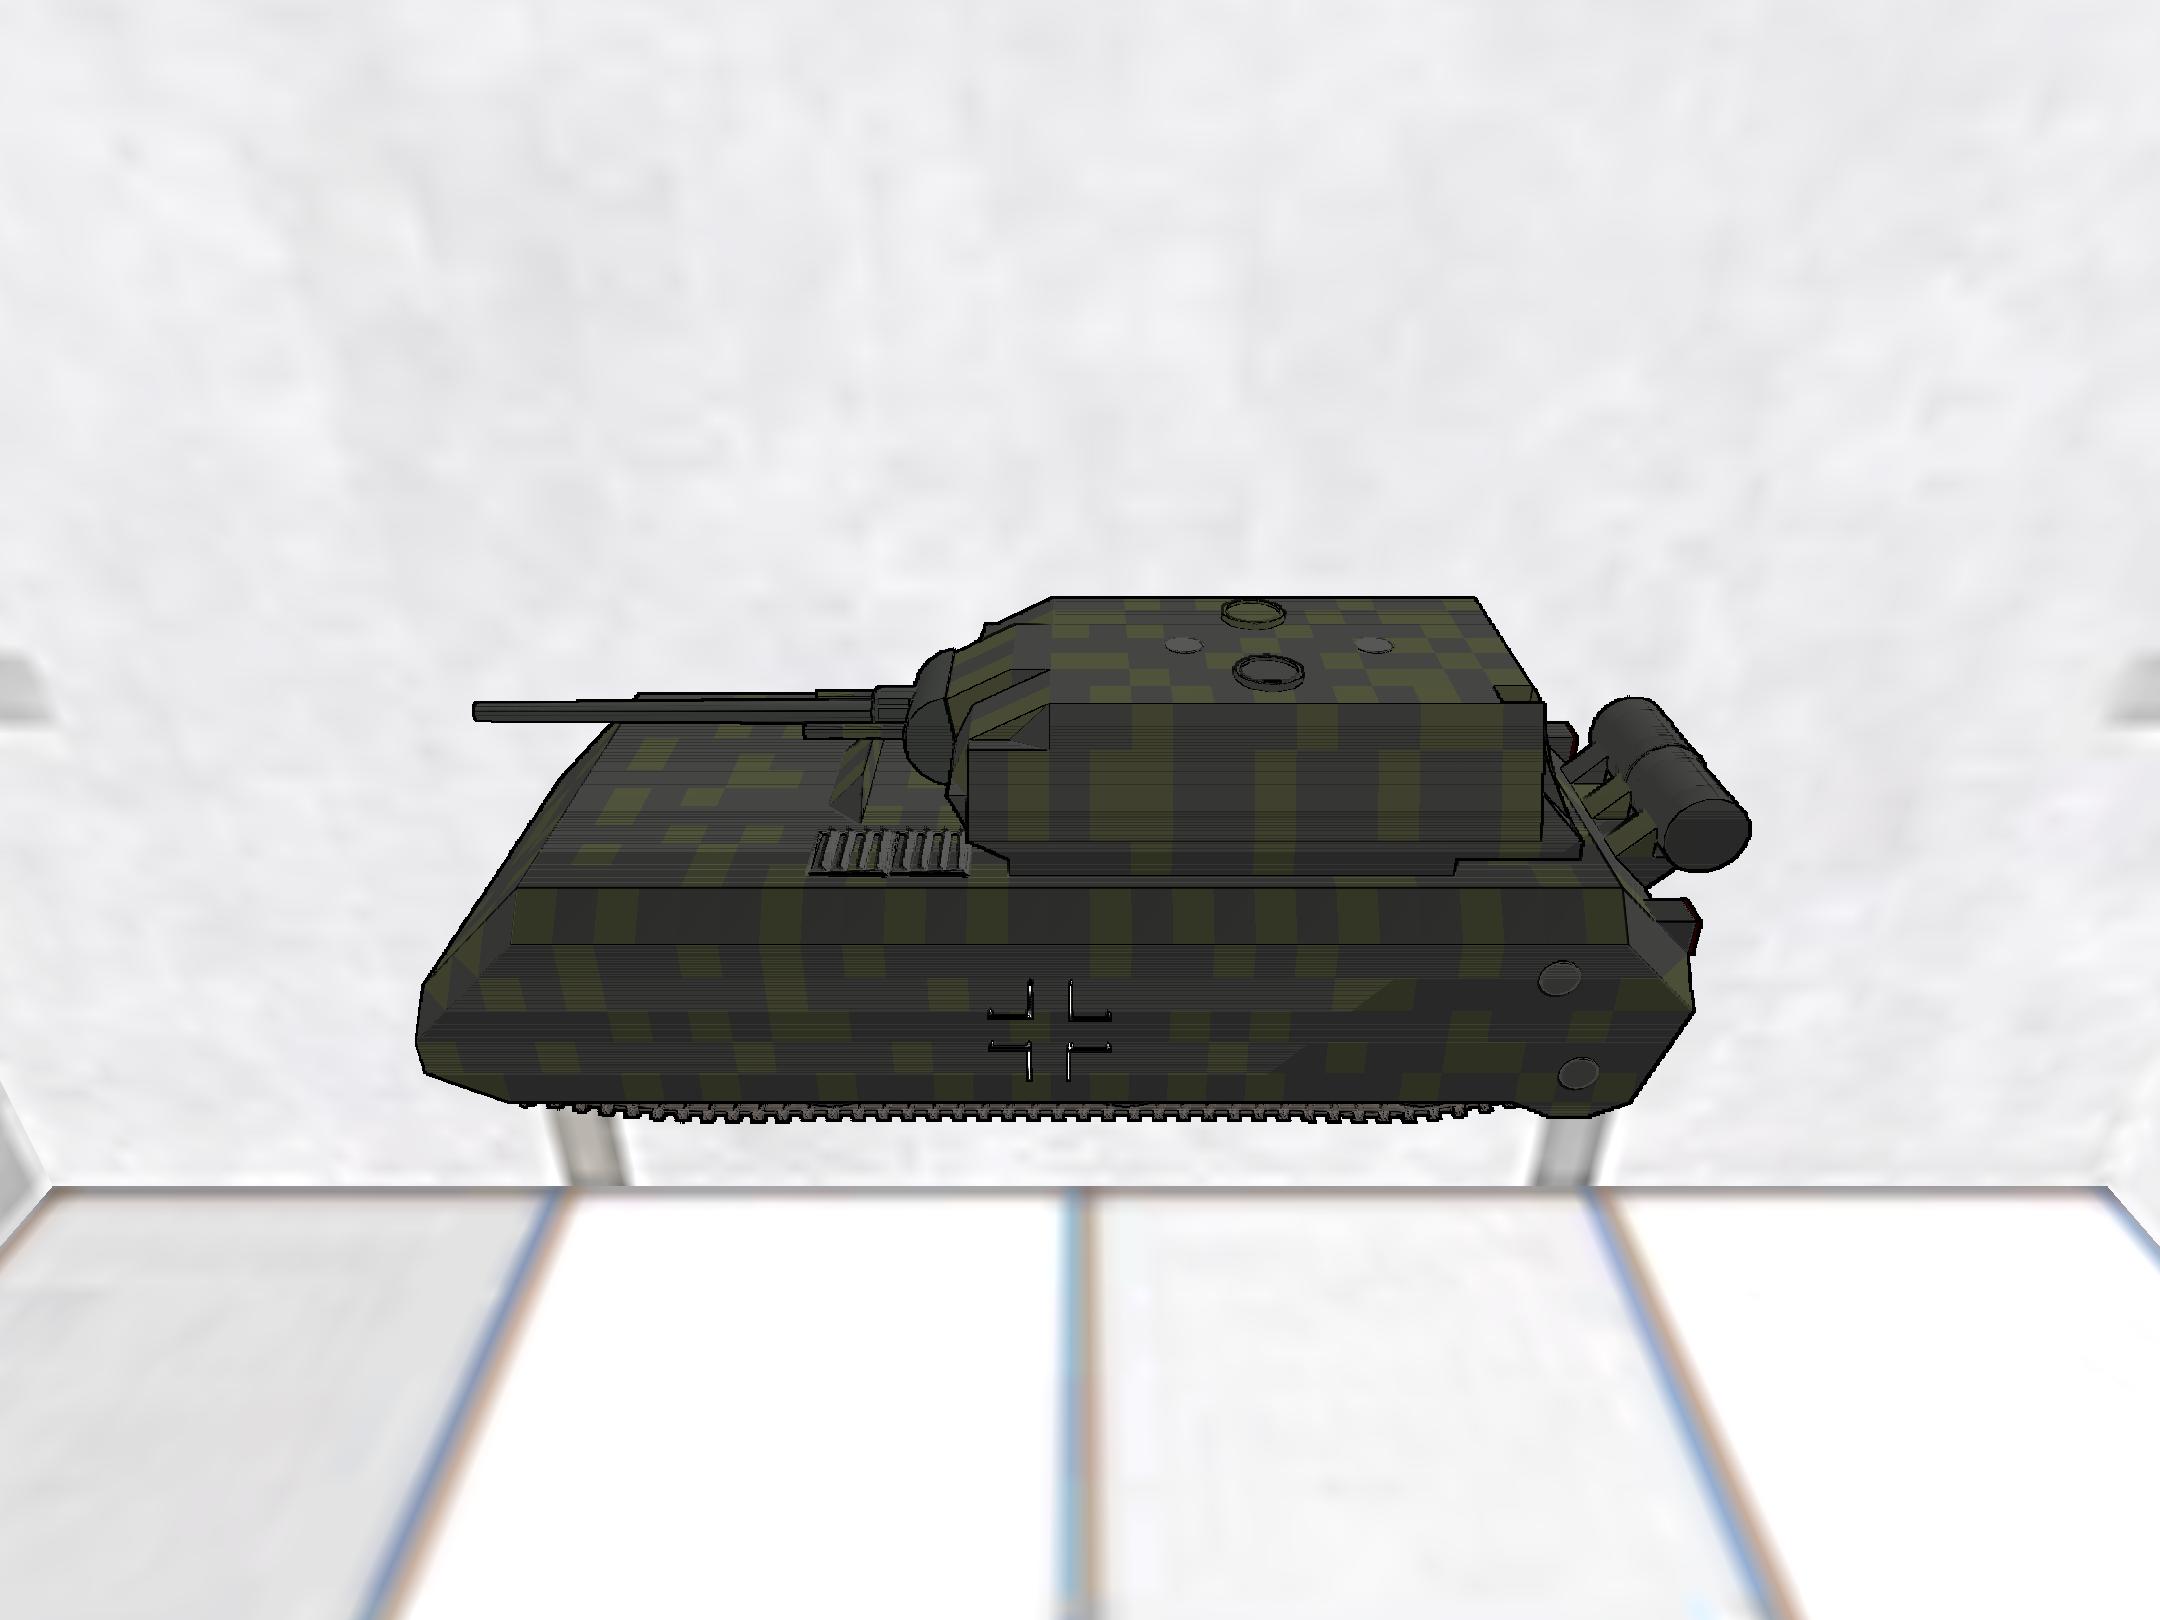 Panzerkampfwagen VIII "Maus"